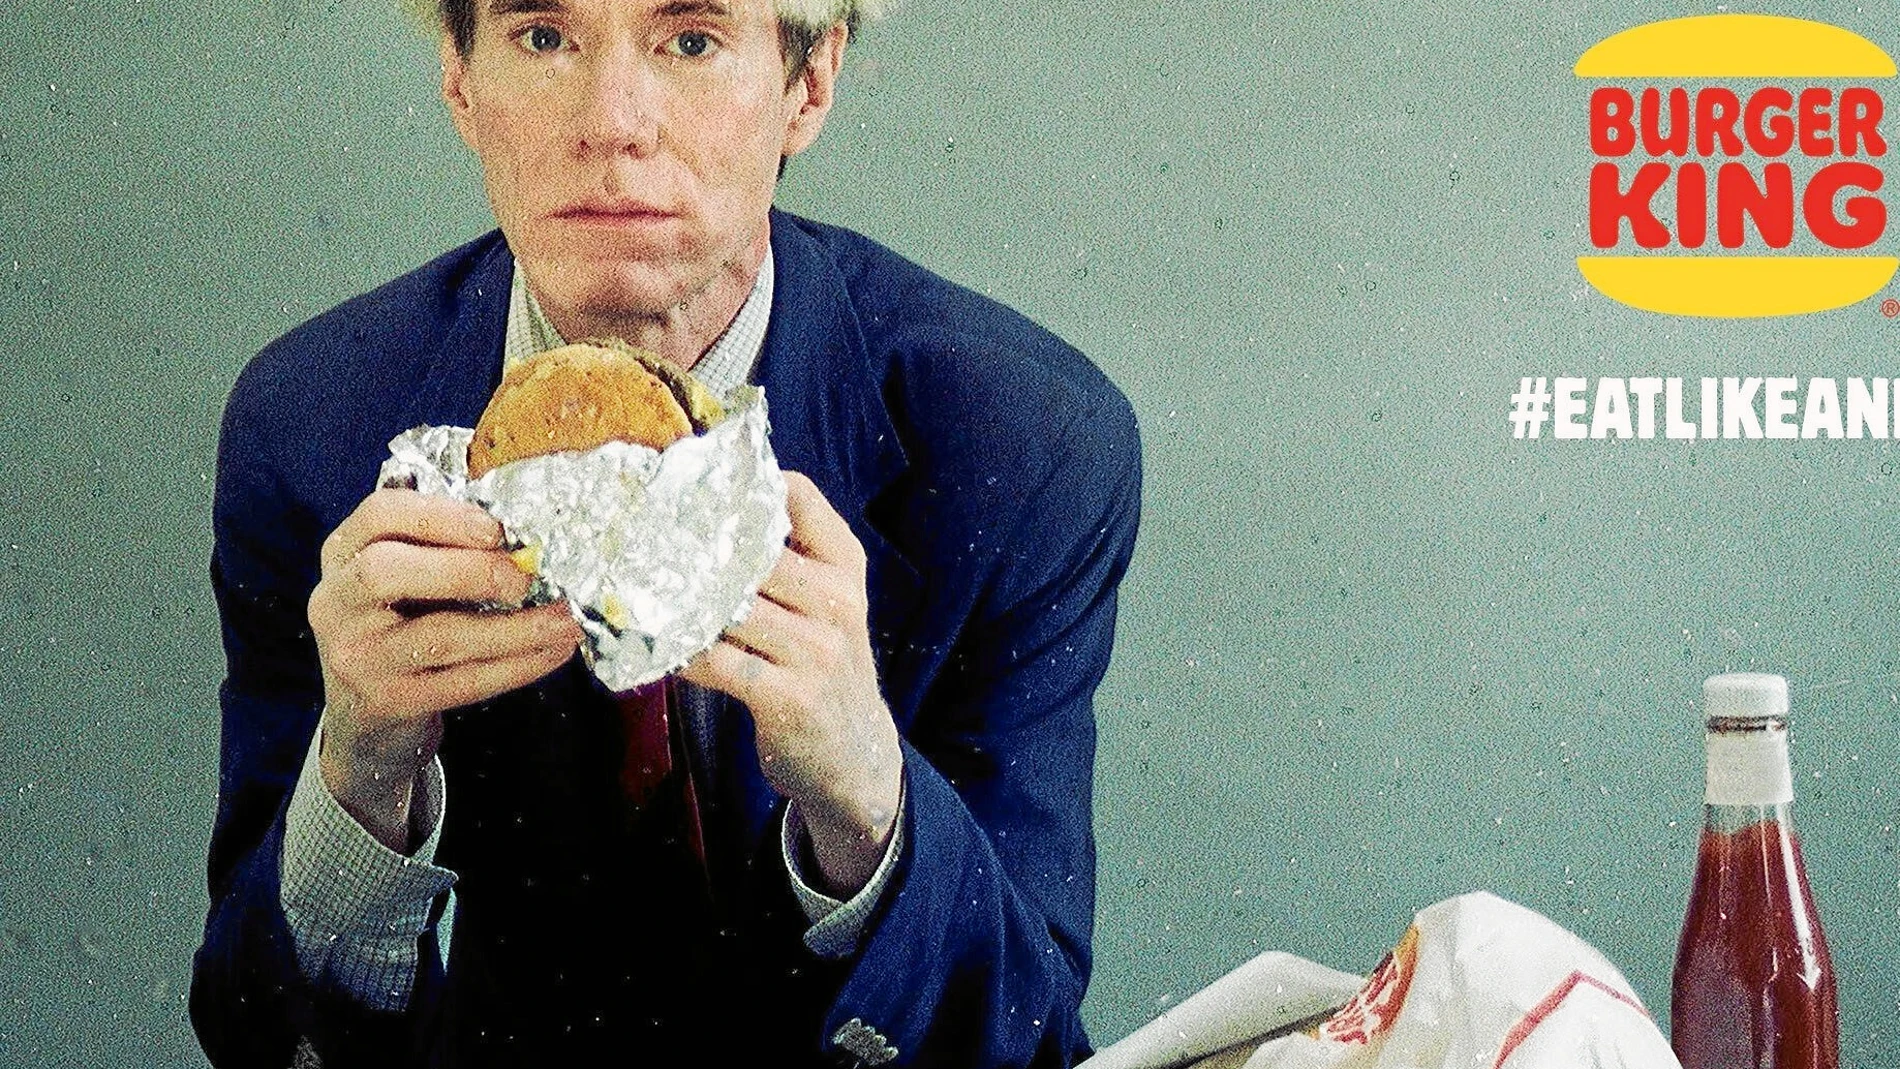 El artista Andy Warhol come una hamburguesa en el vídeo de 1982 utilizado por una empresa de comida rápida en su anuncio millonario para la Super Bowl. Foto: Burguer king vía AP